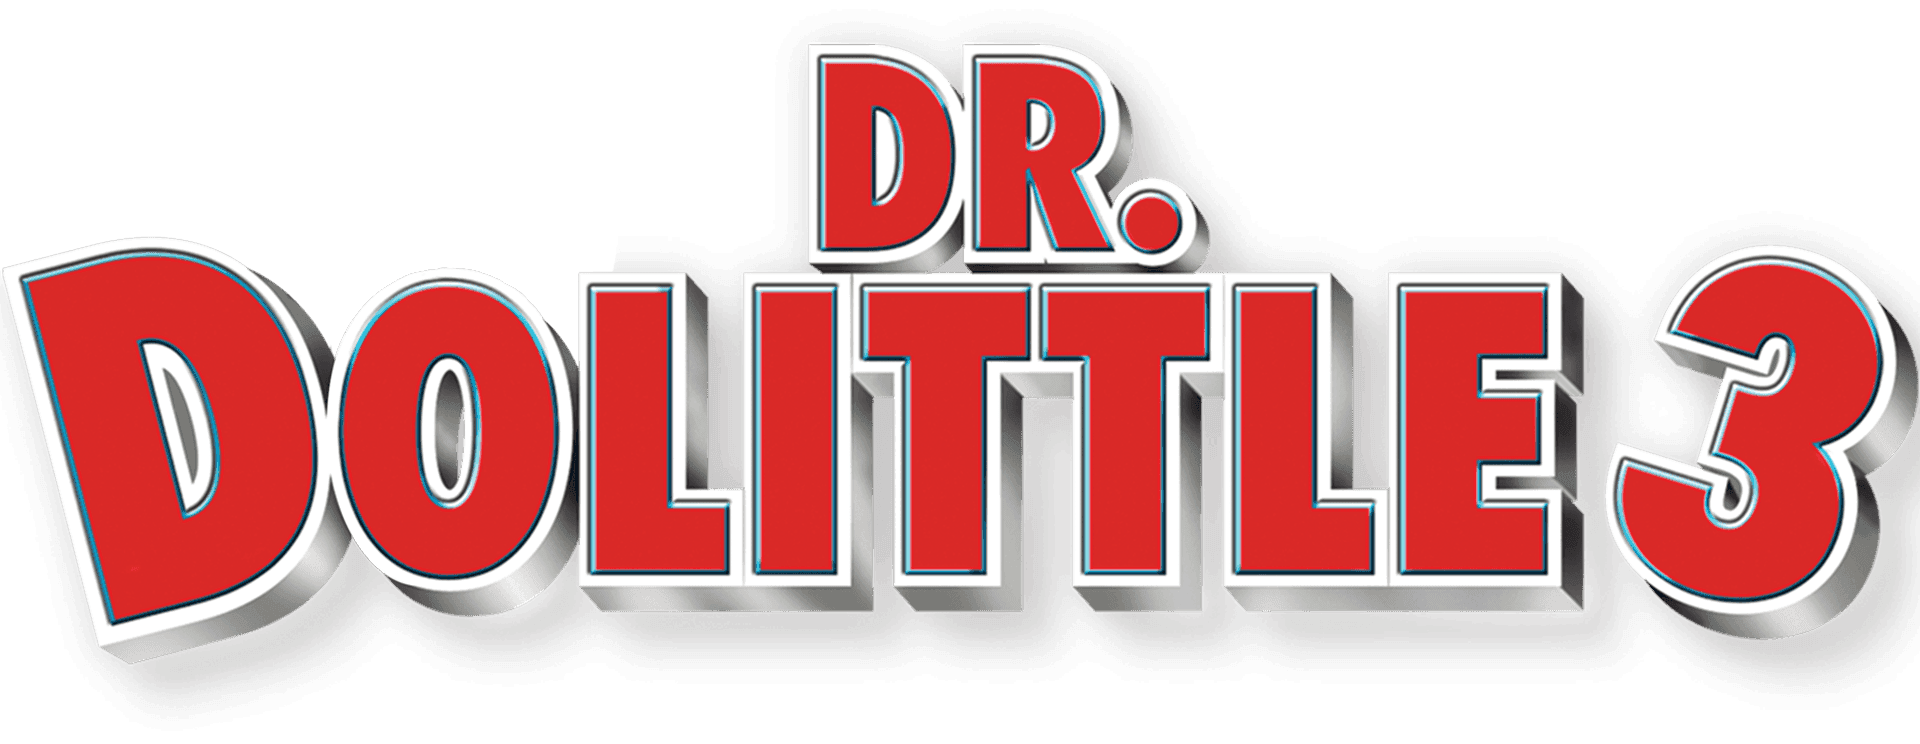 Dr. Dolittle 3 logo